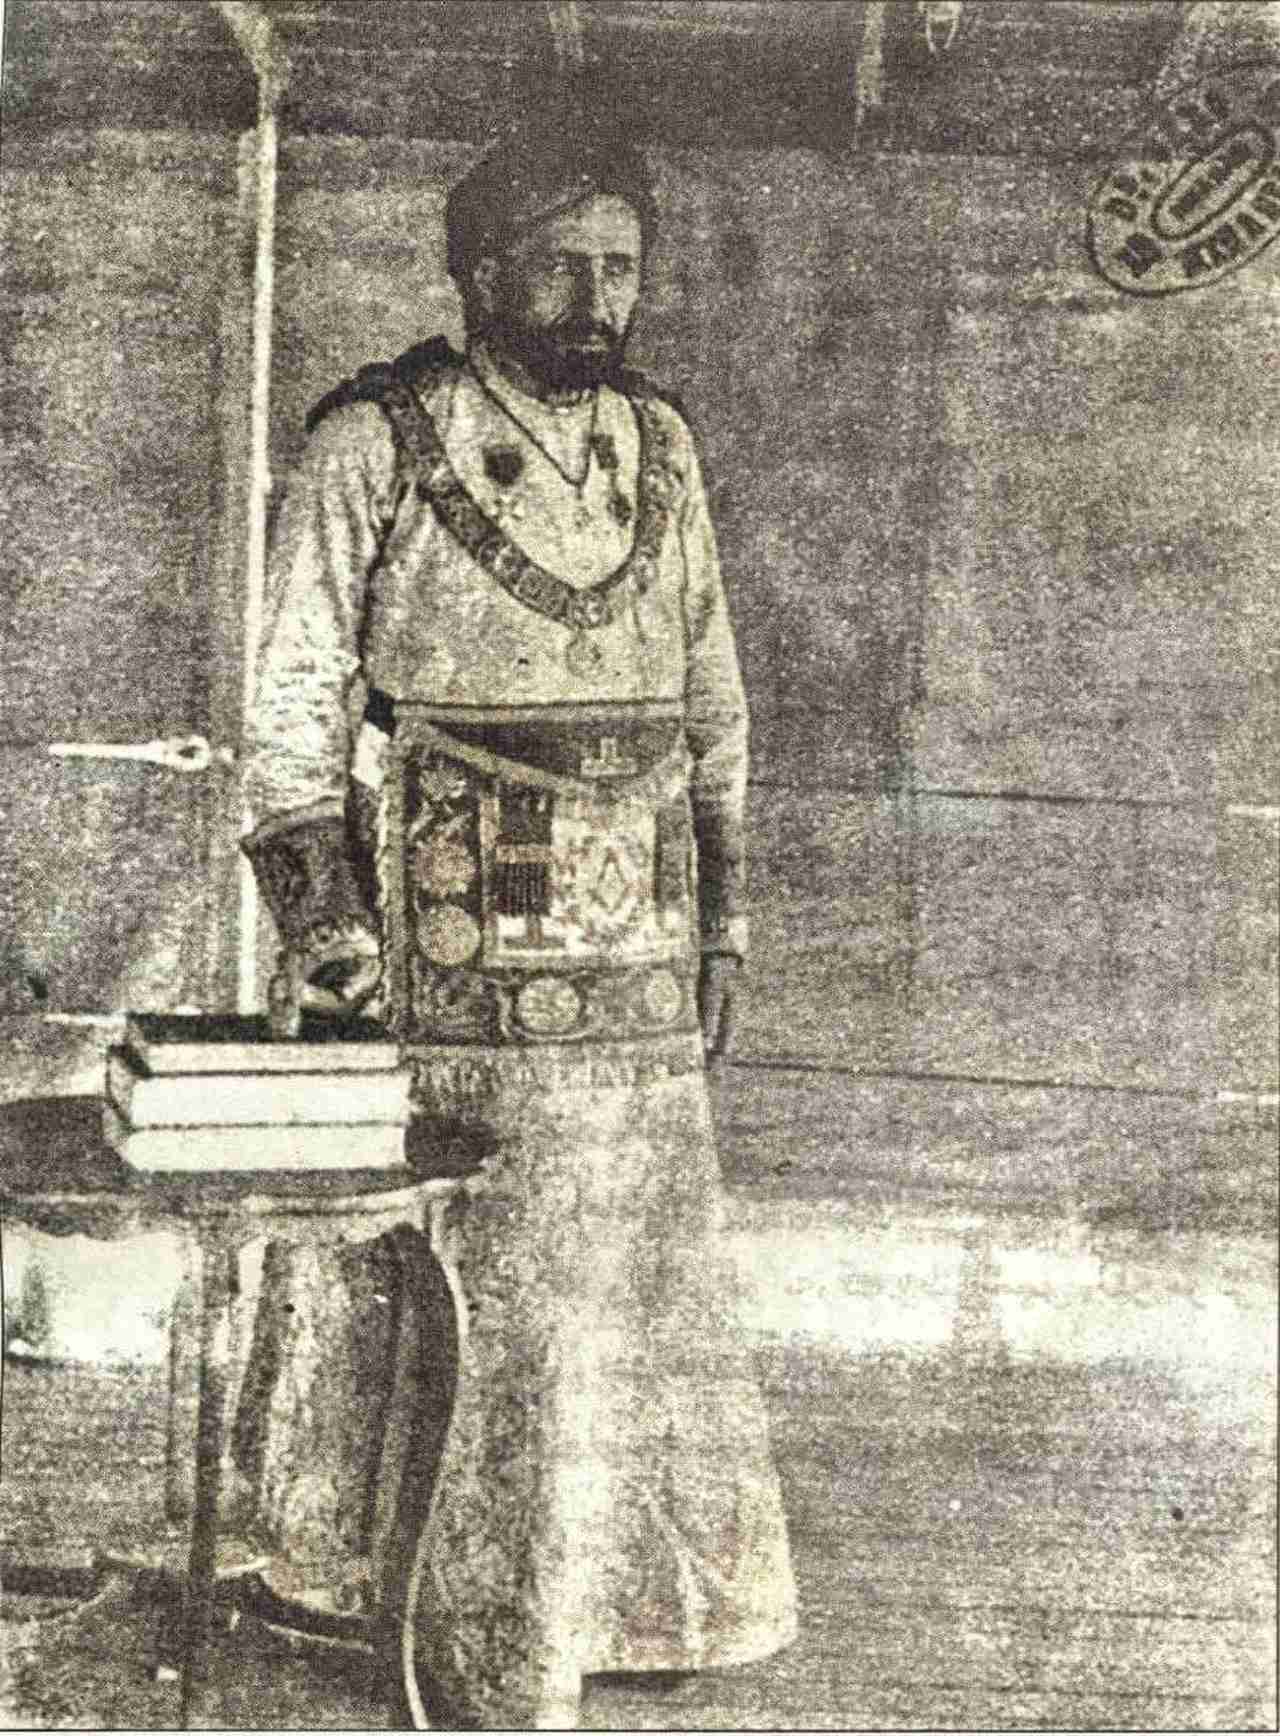 شیخ خزعل